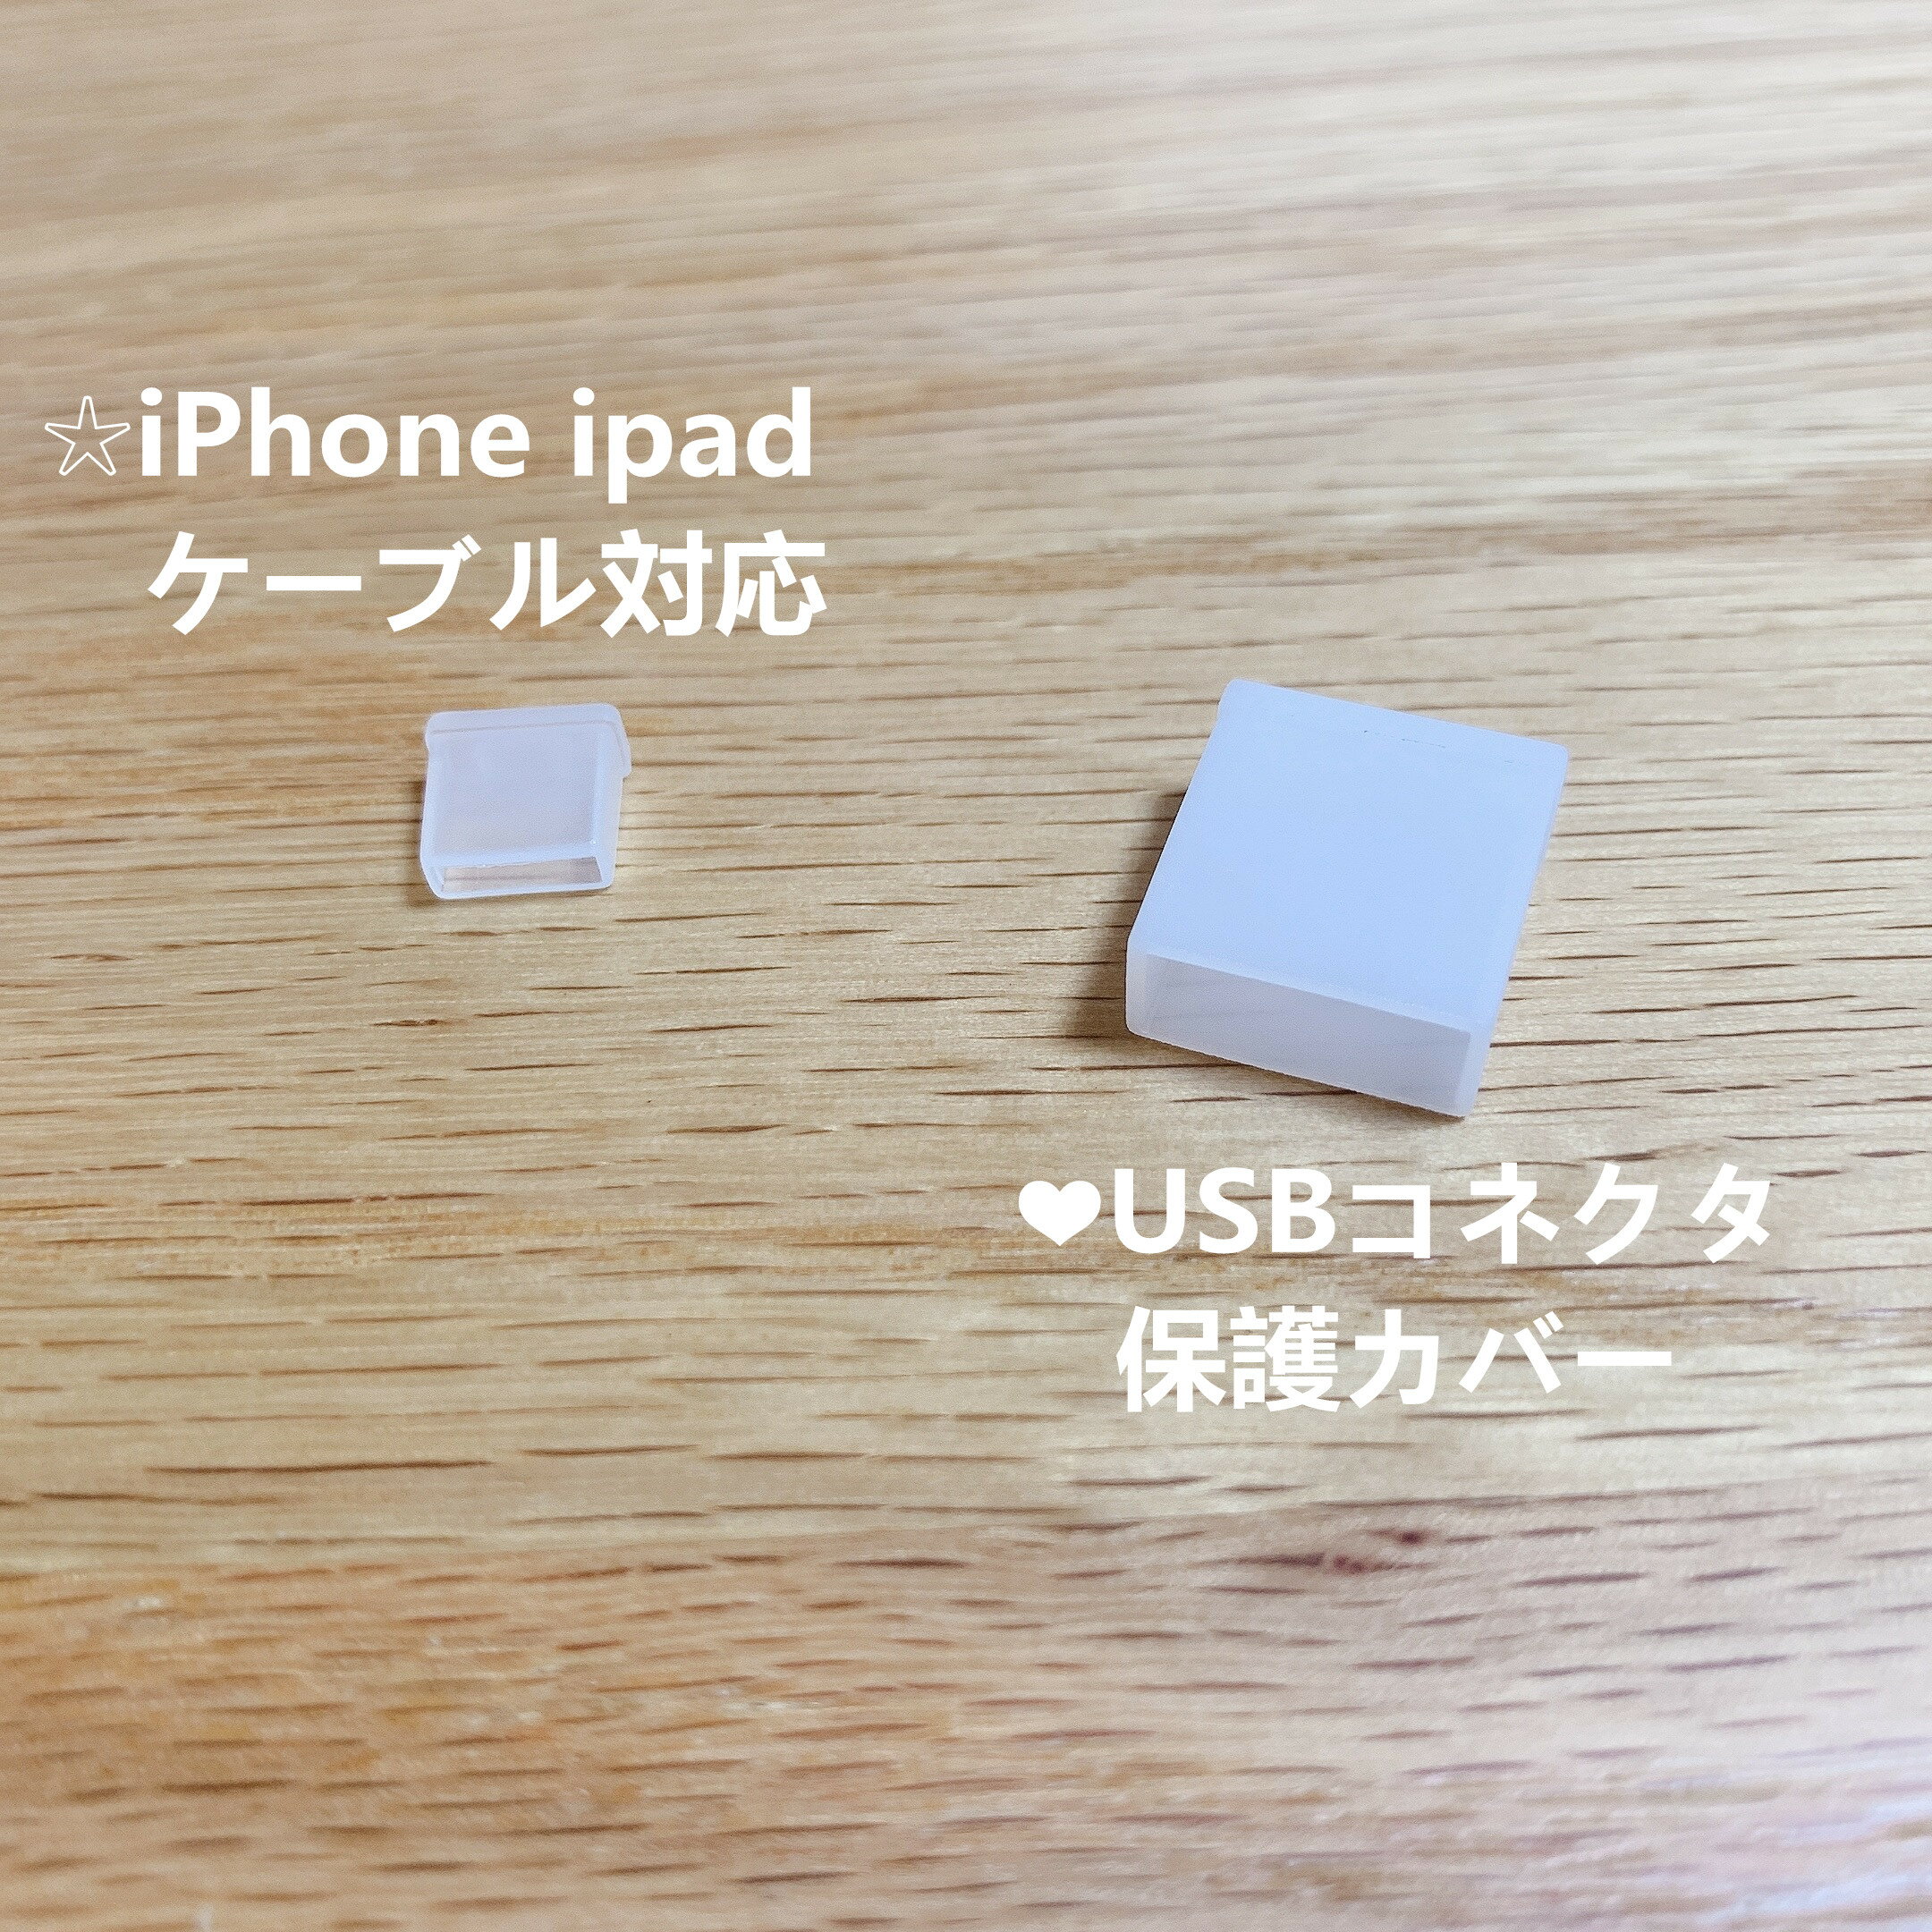 USB コネクタ保護カバー キャップ シ